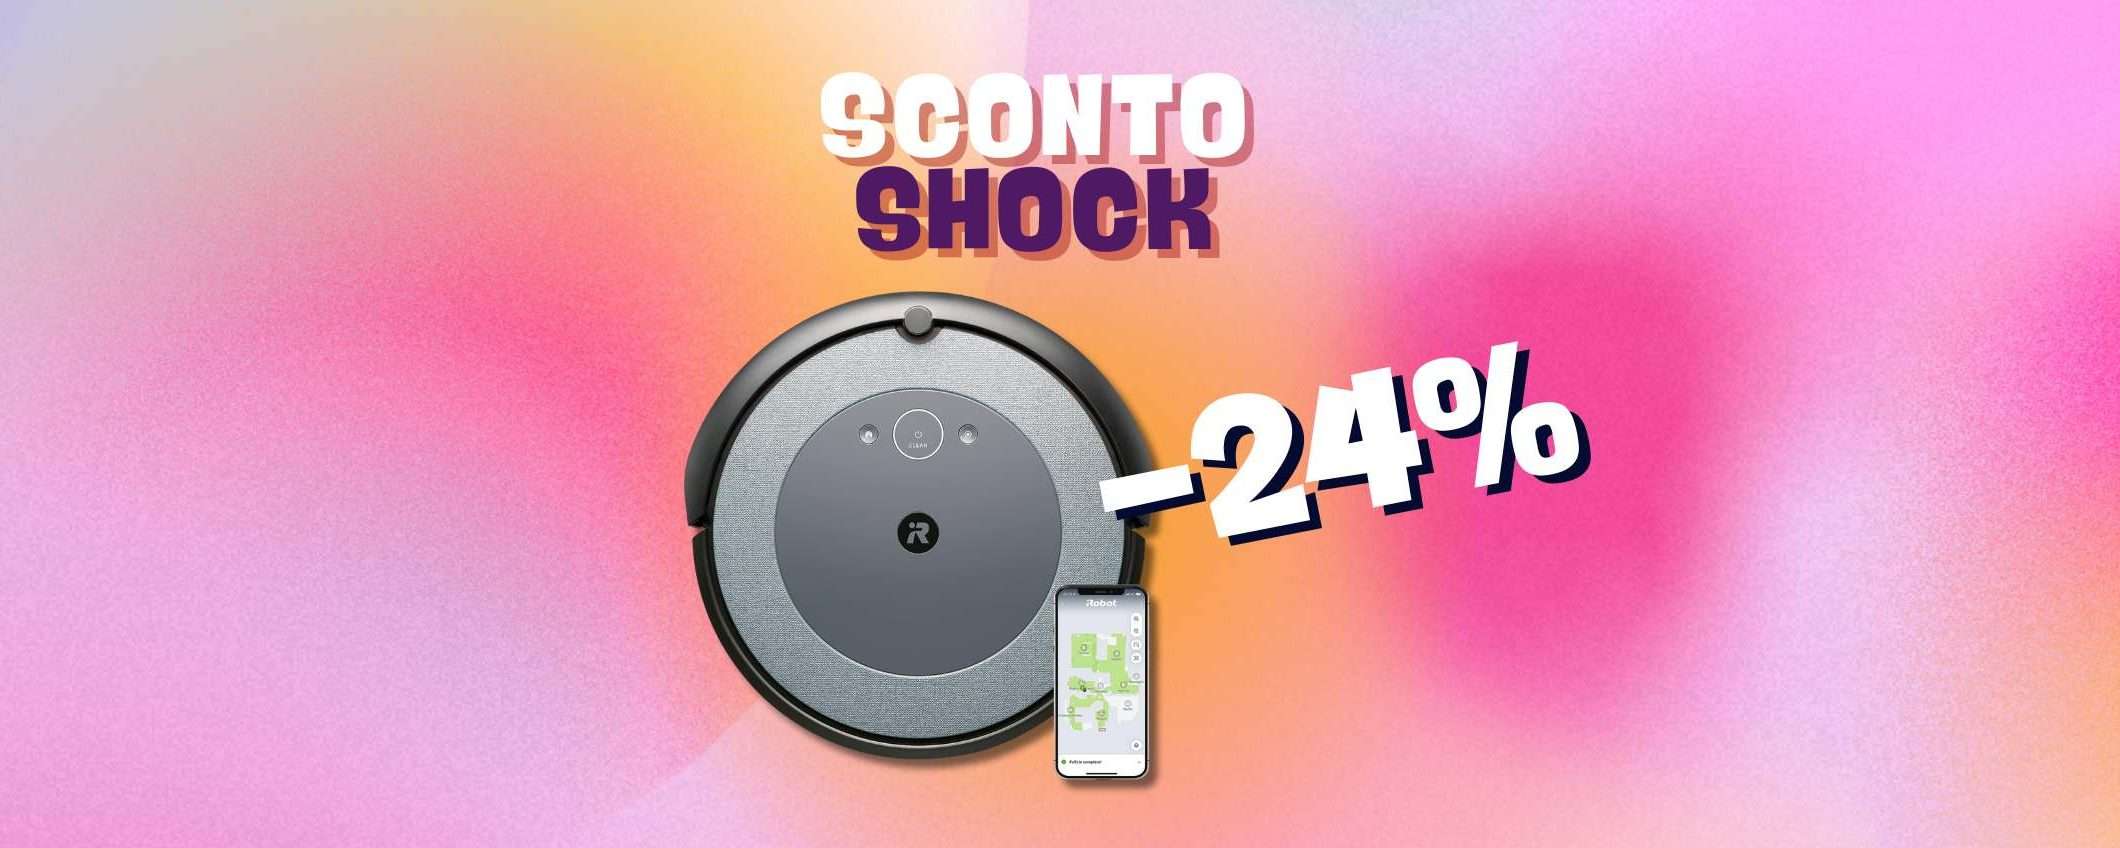 iRobot Roomba I3152: sconto del 24% per pochissimo!